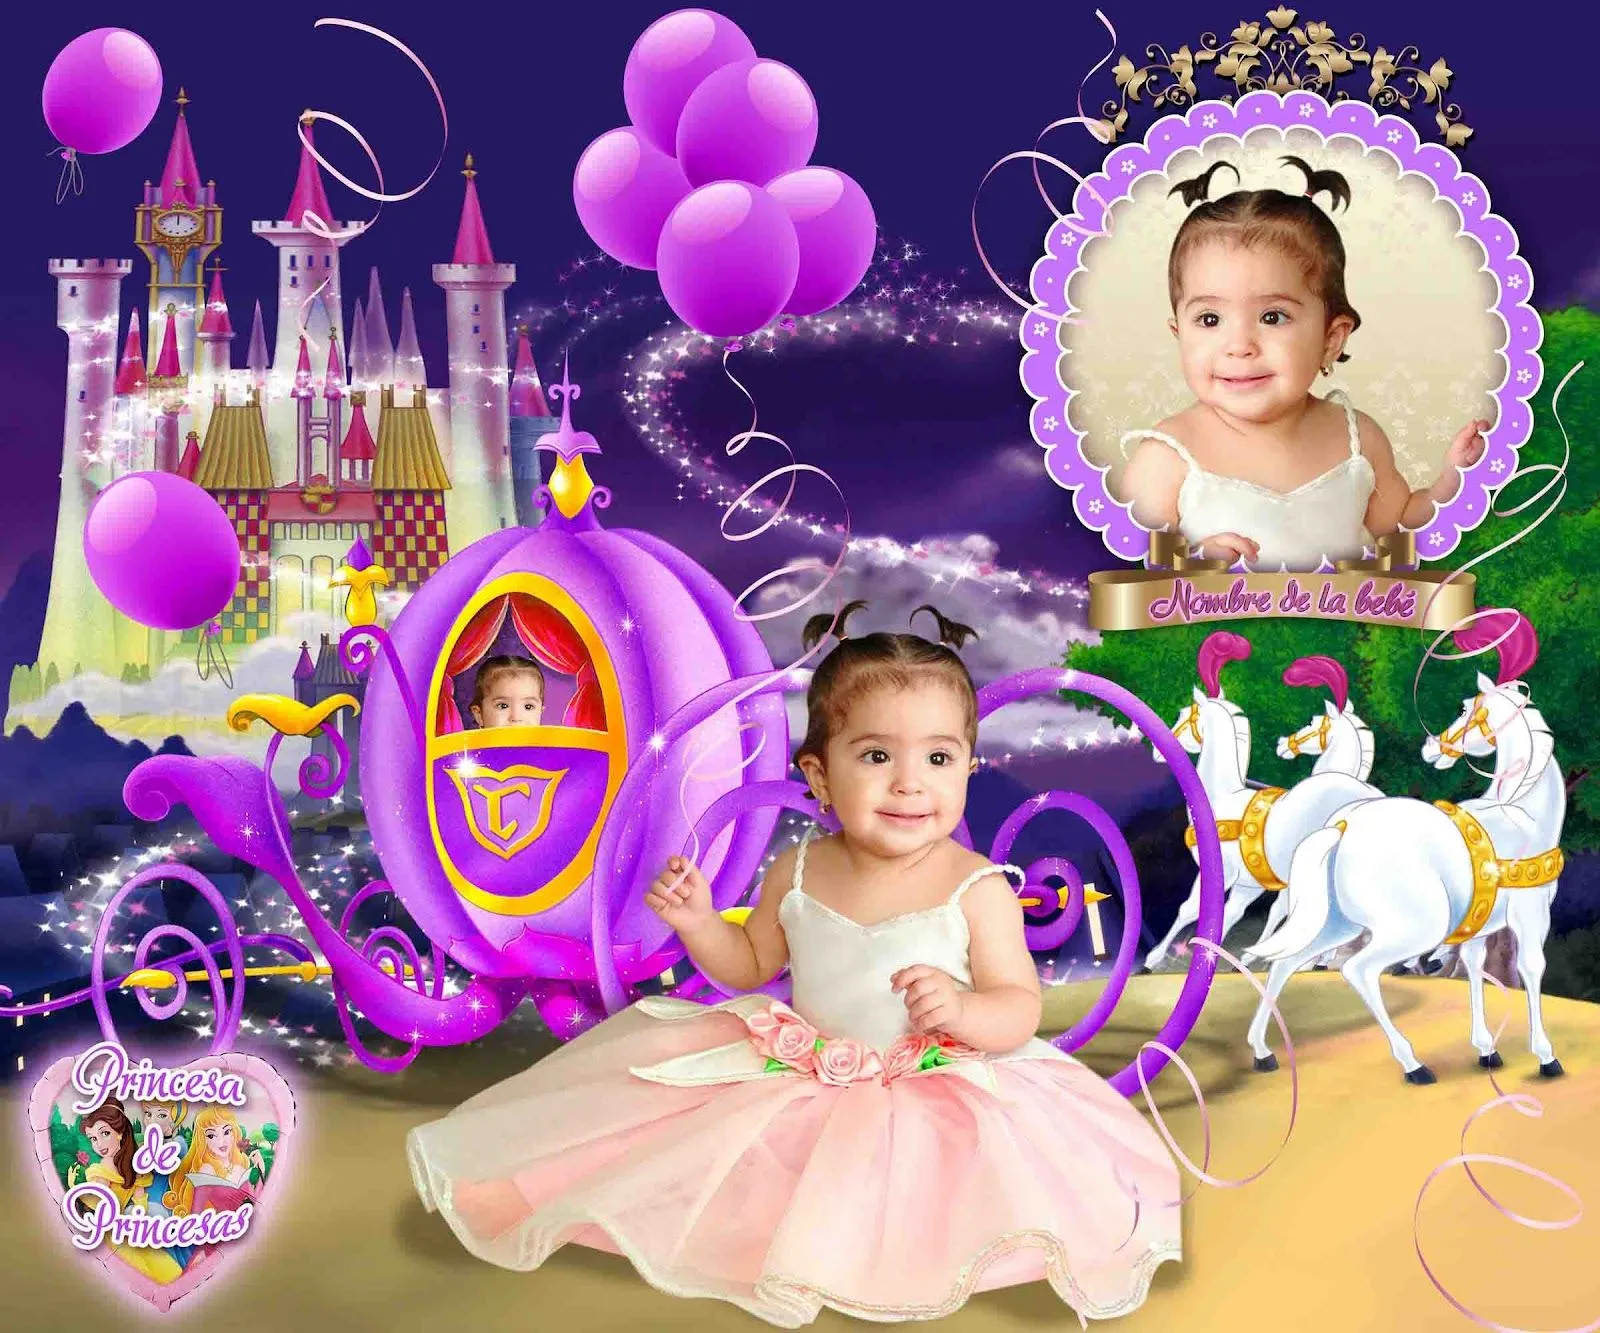 Princesa de princesas - Plantillas para Photoshop 2014